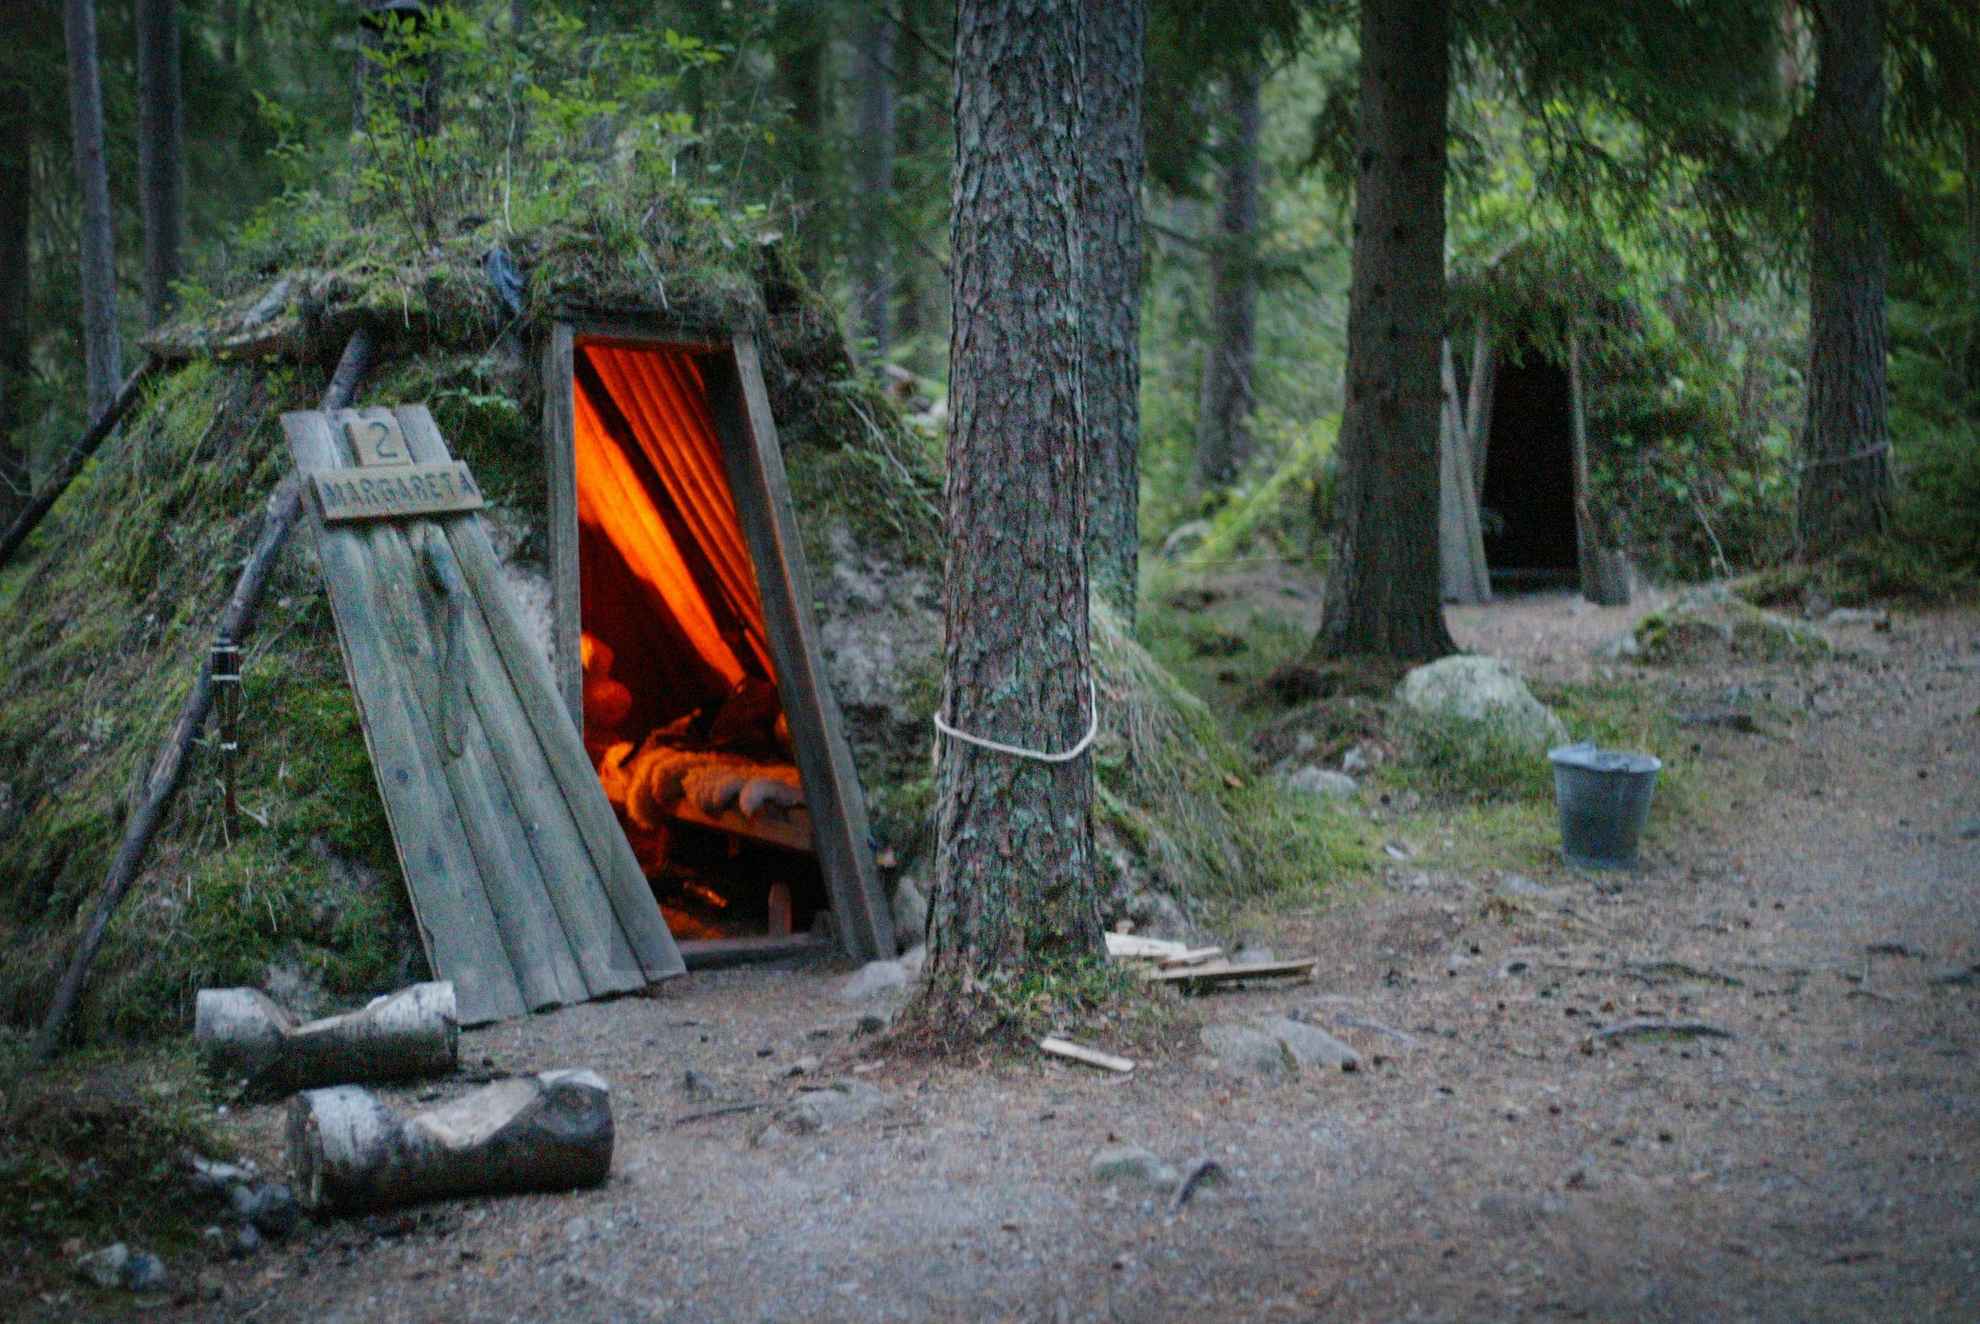 Deux huttes recouvertes de mousse sont situées dans une forêt. Il y a un feu de cheminée dans l'une des huttes.